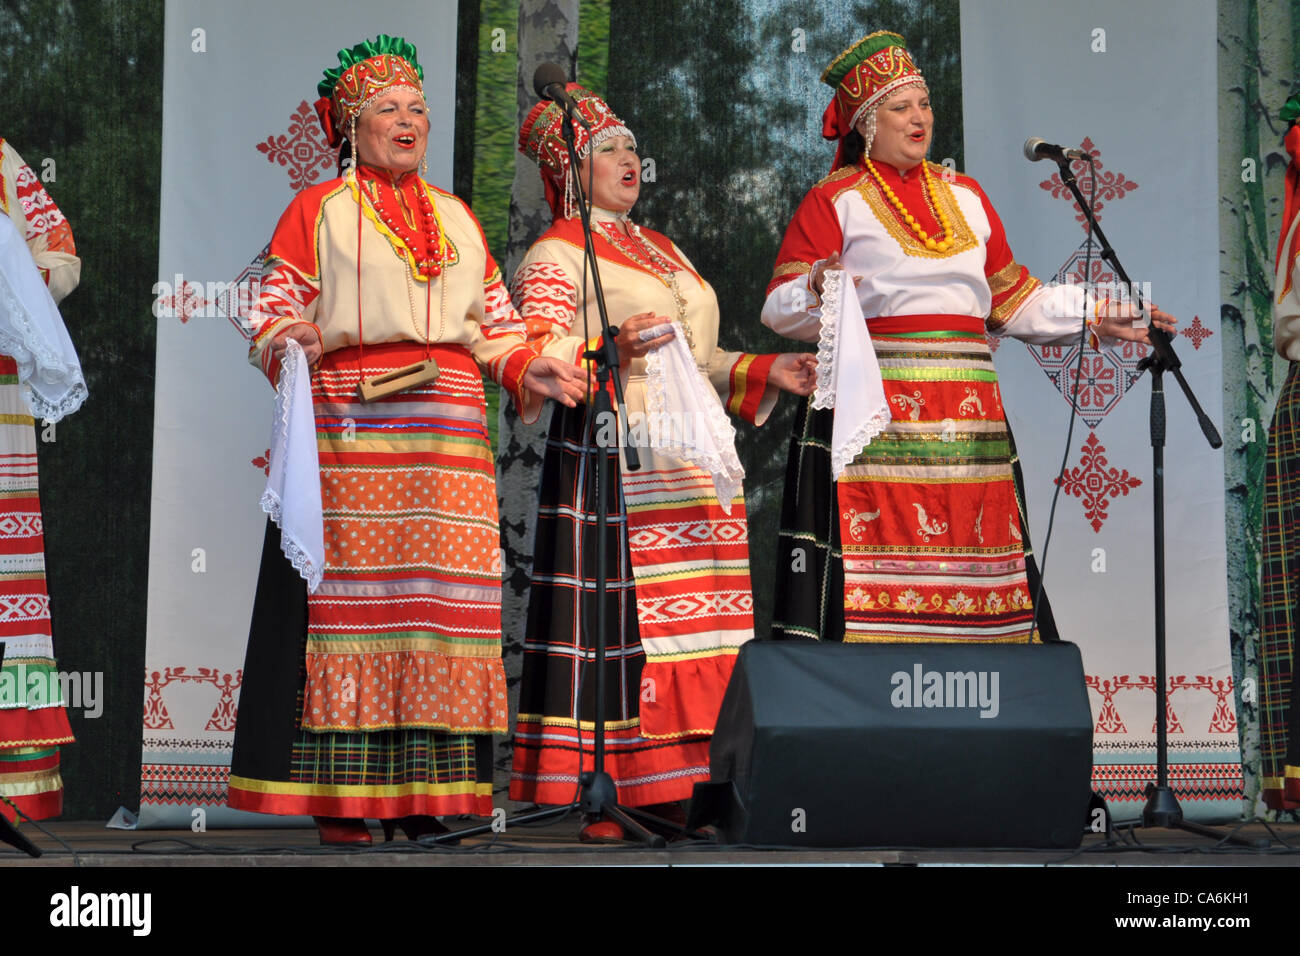 Russisches Lied Ensemble 'Veselyi Suvenir' (Russland) auf der Bühne Stockfoto